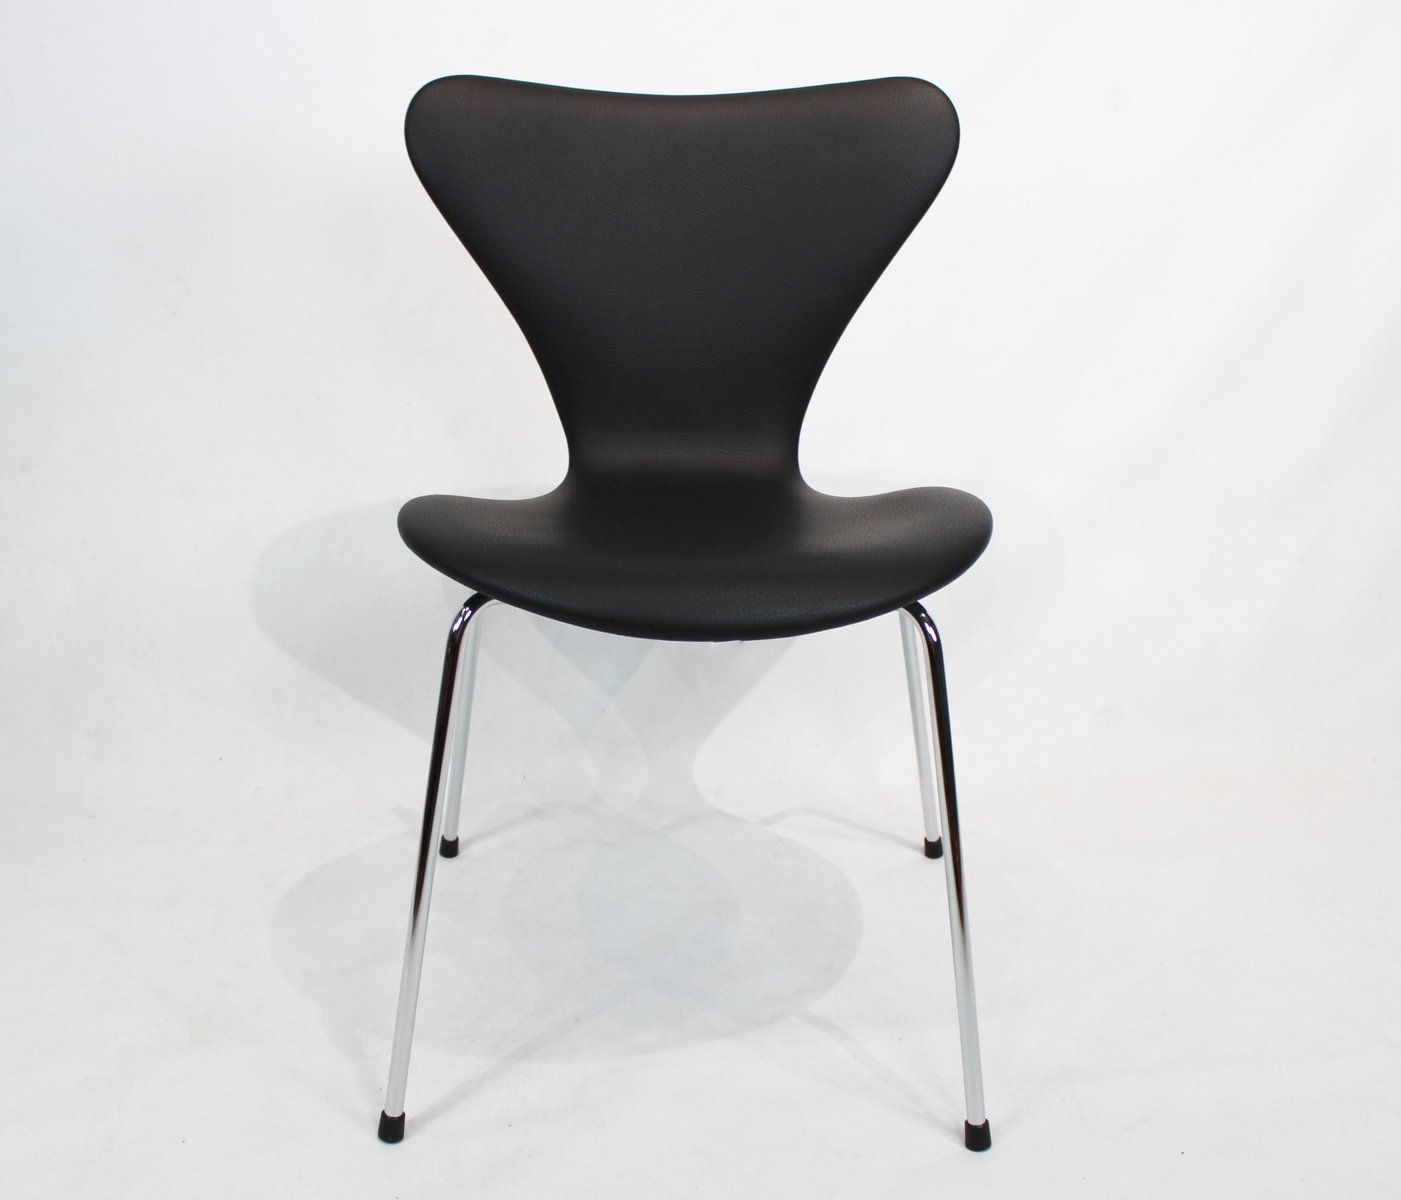 black leather model 3107 dining chair by arne jacobsen for fritz hansen 1980s UY-570021